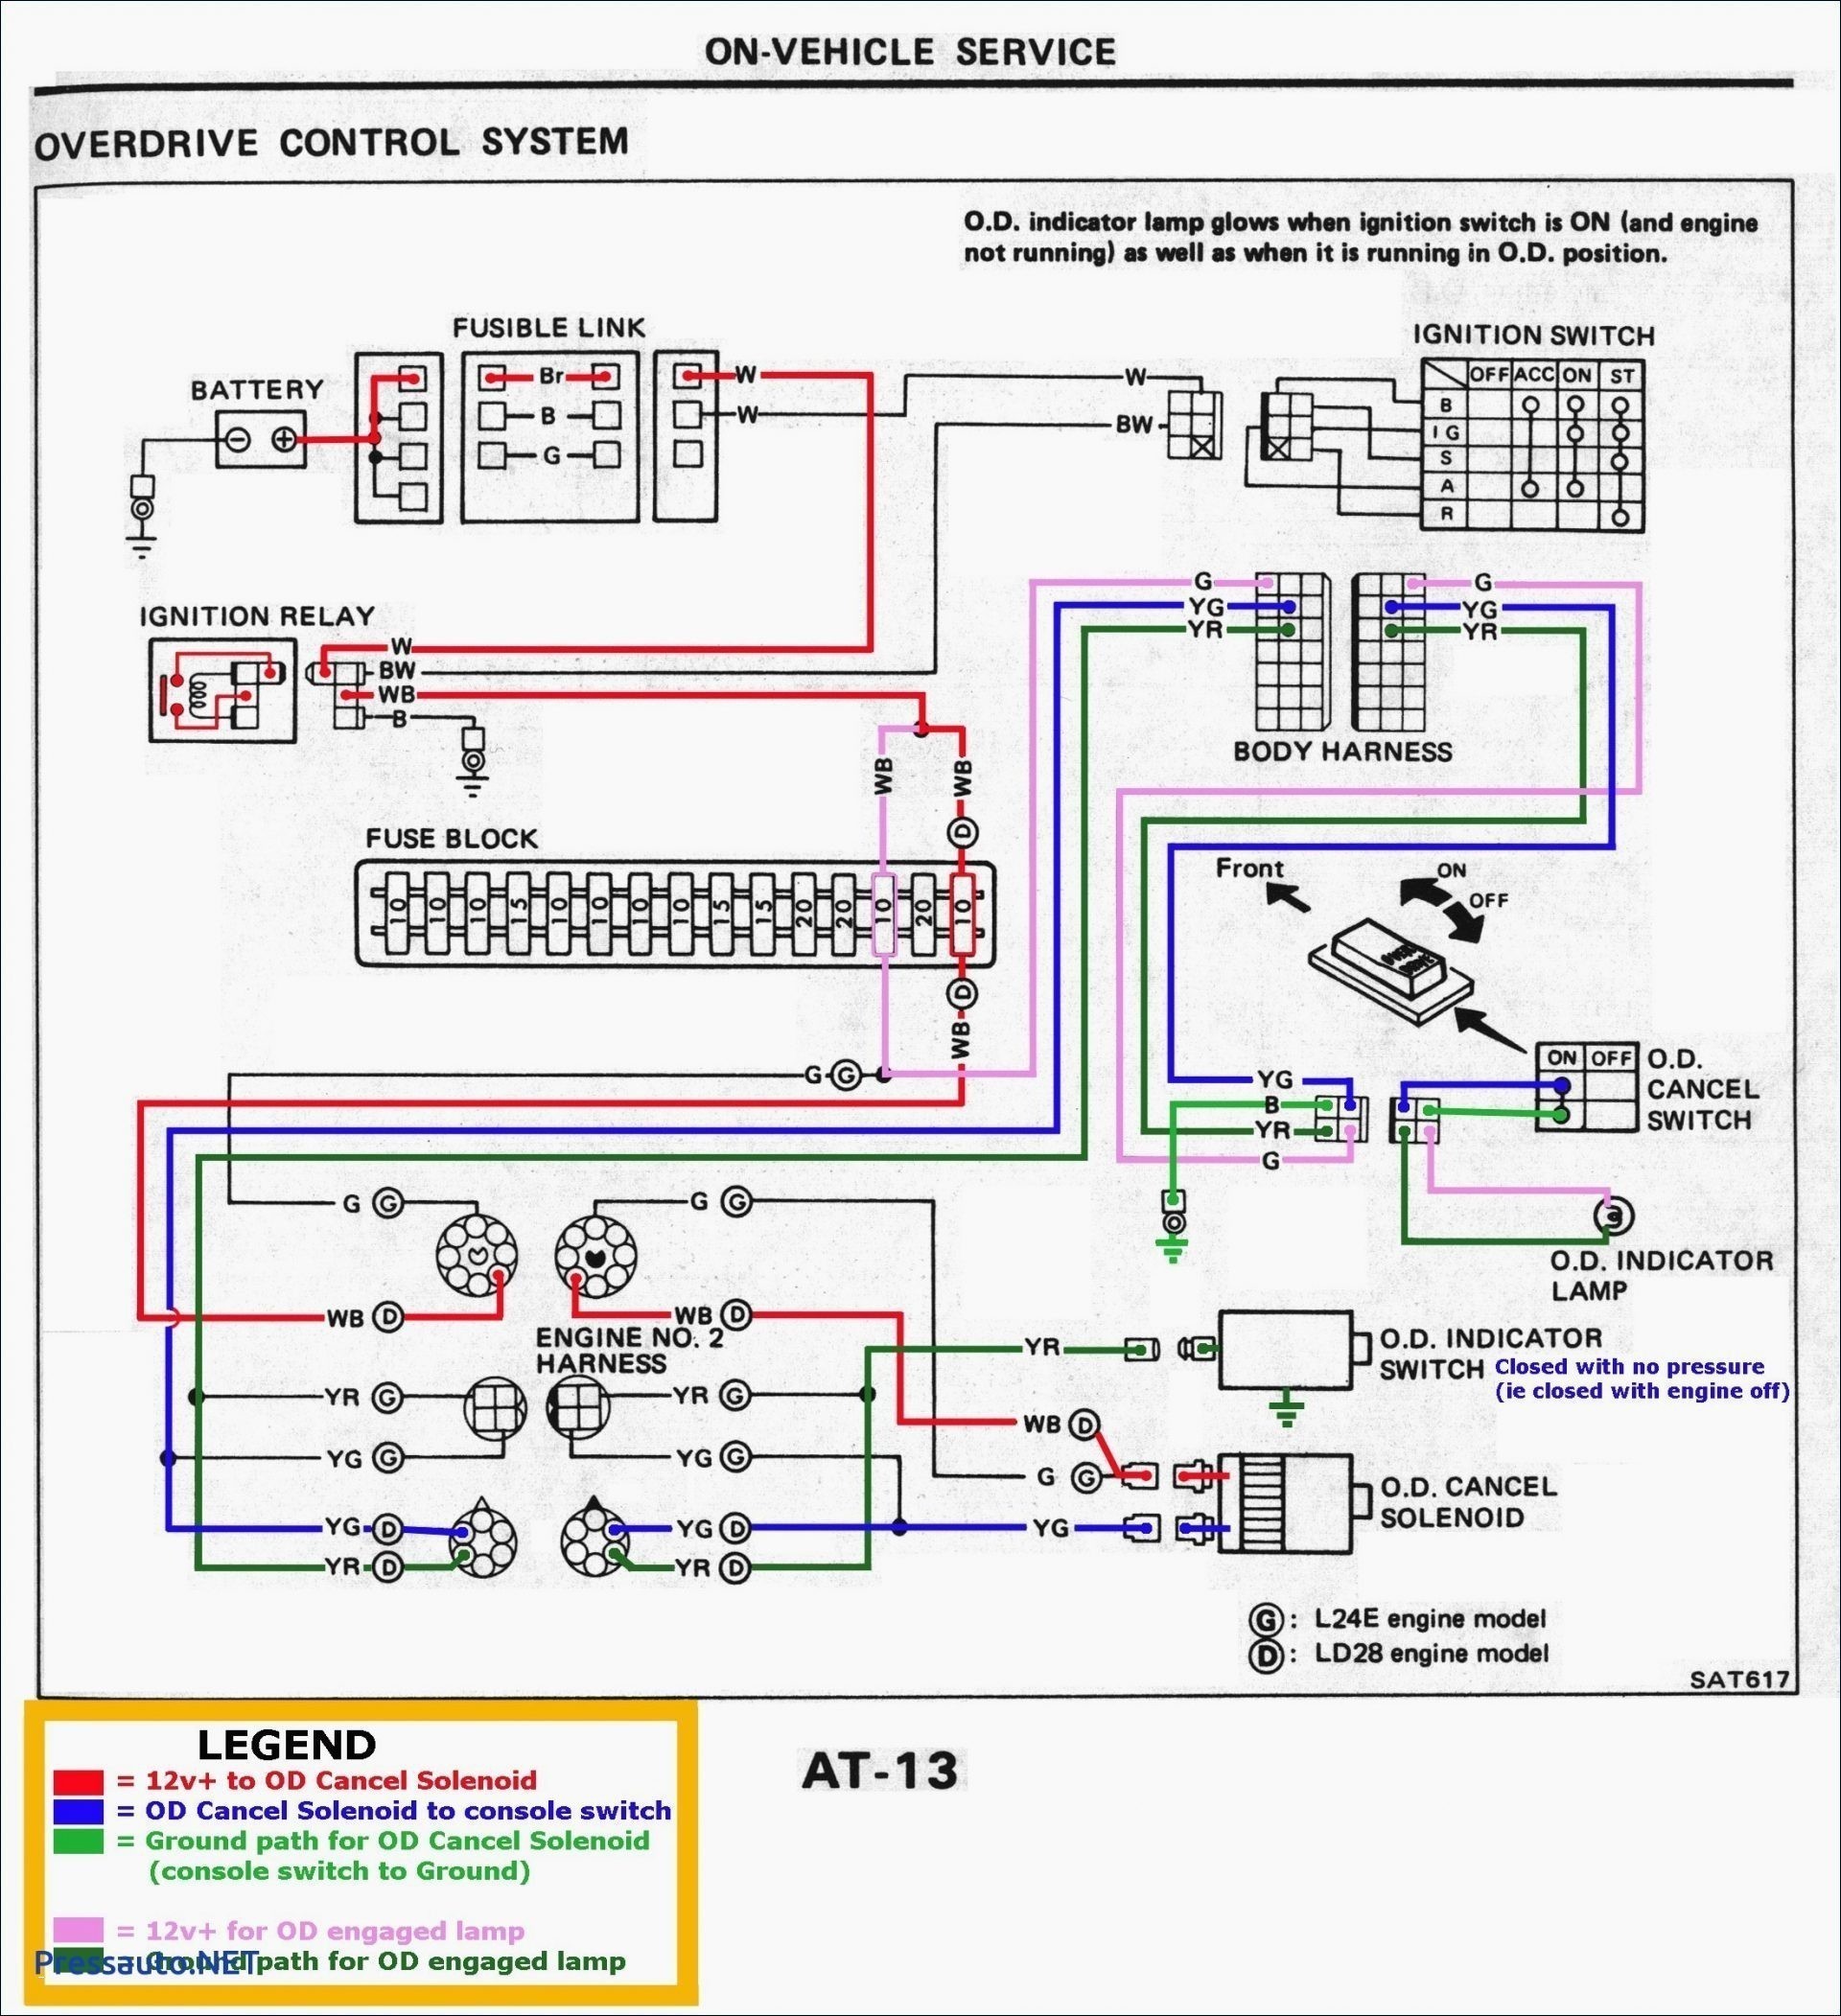 Whirlpool Washer Wiring Diagram Wiring Diagram Washing Machine Best Wiring Diagram Washing Machine Of Whirlpool Washer Wiring Diagram